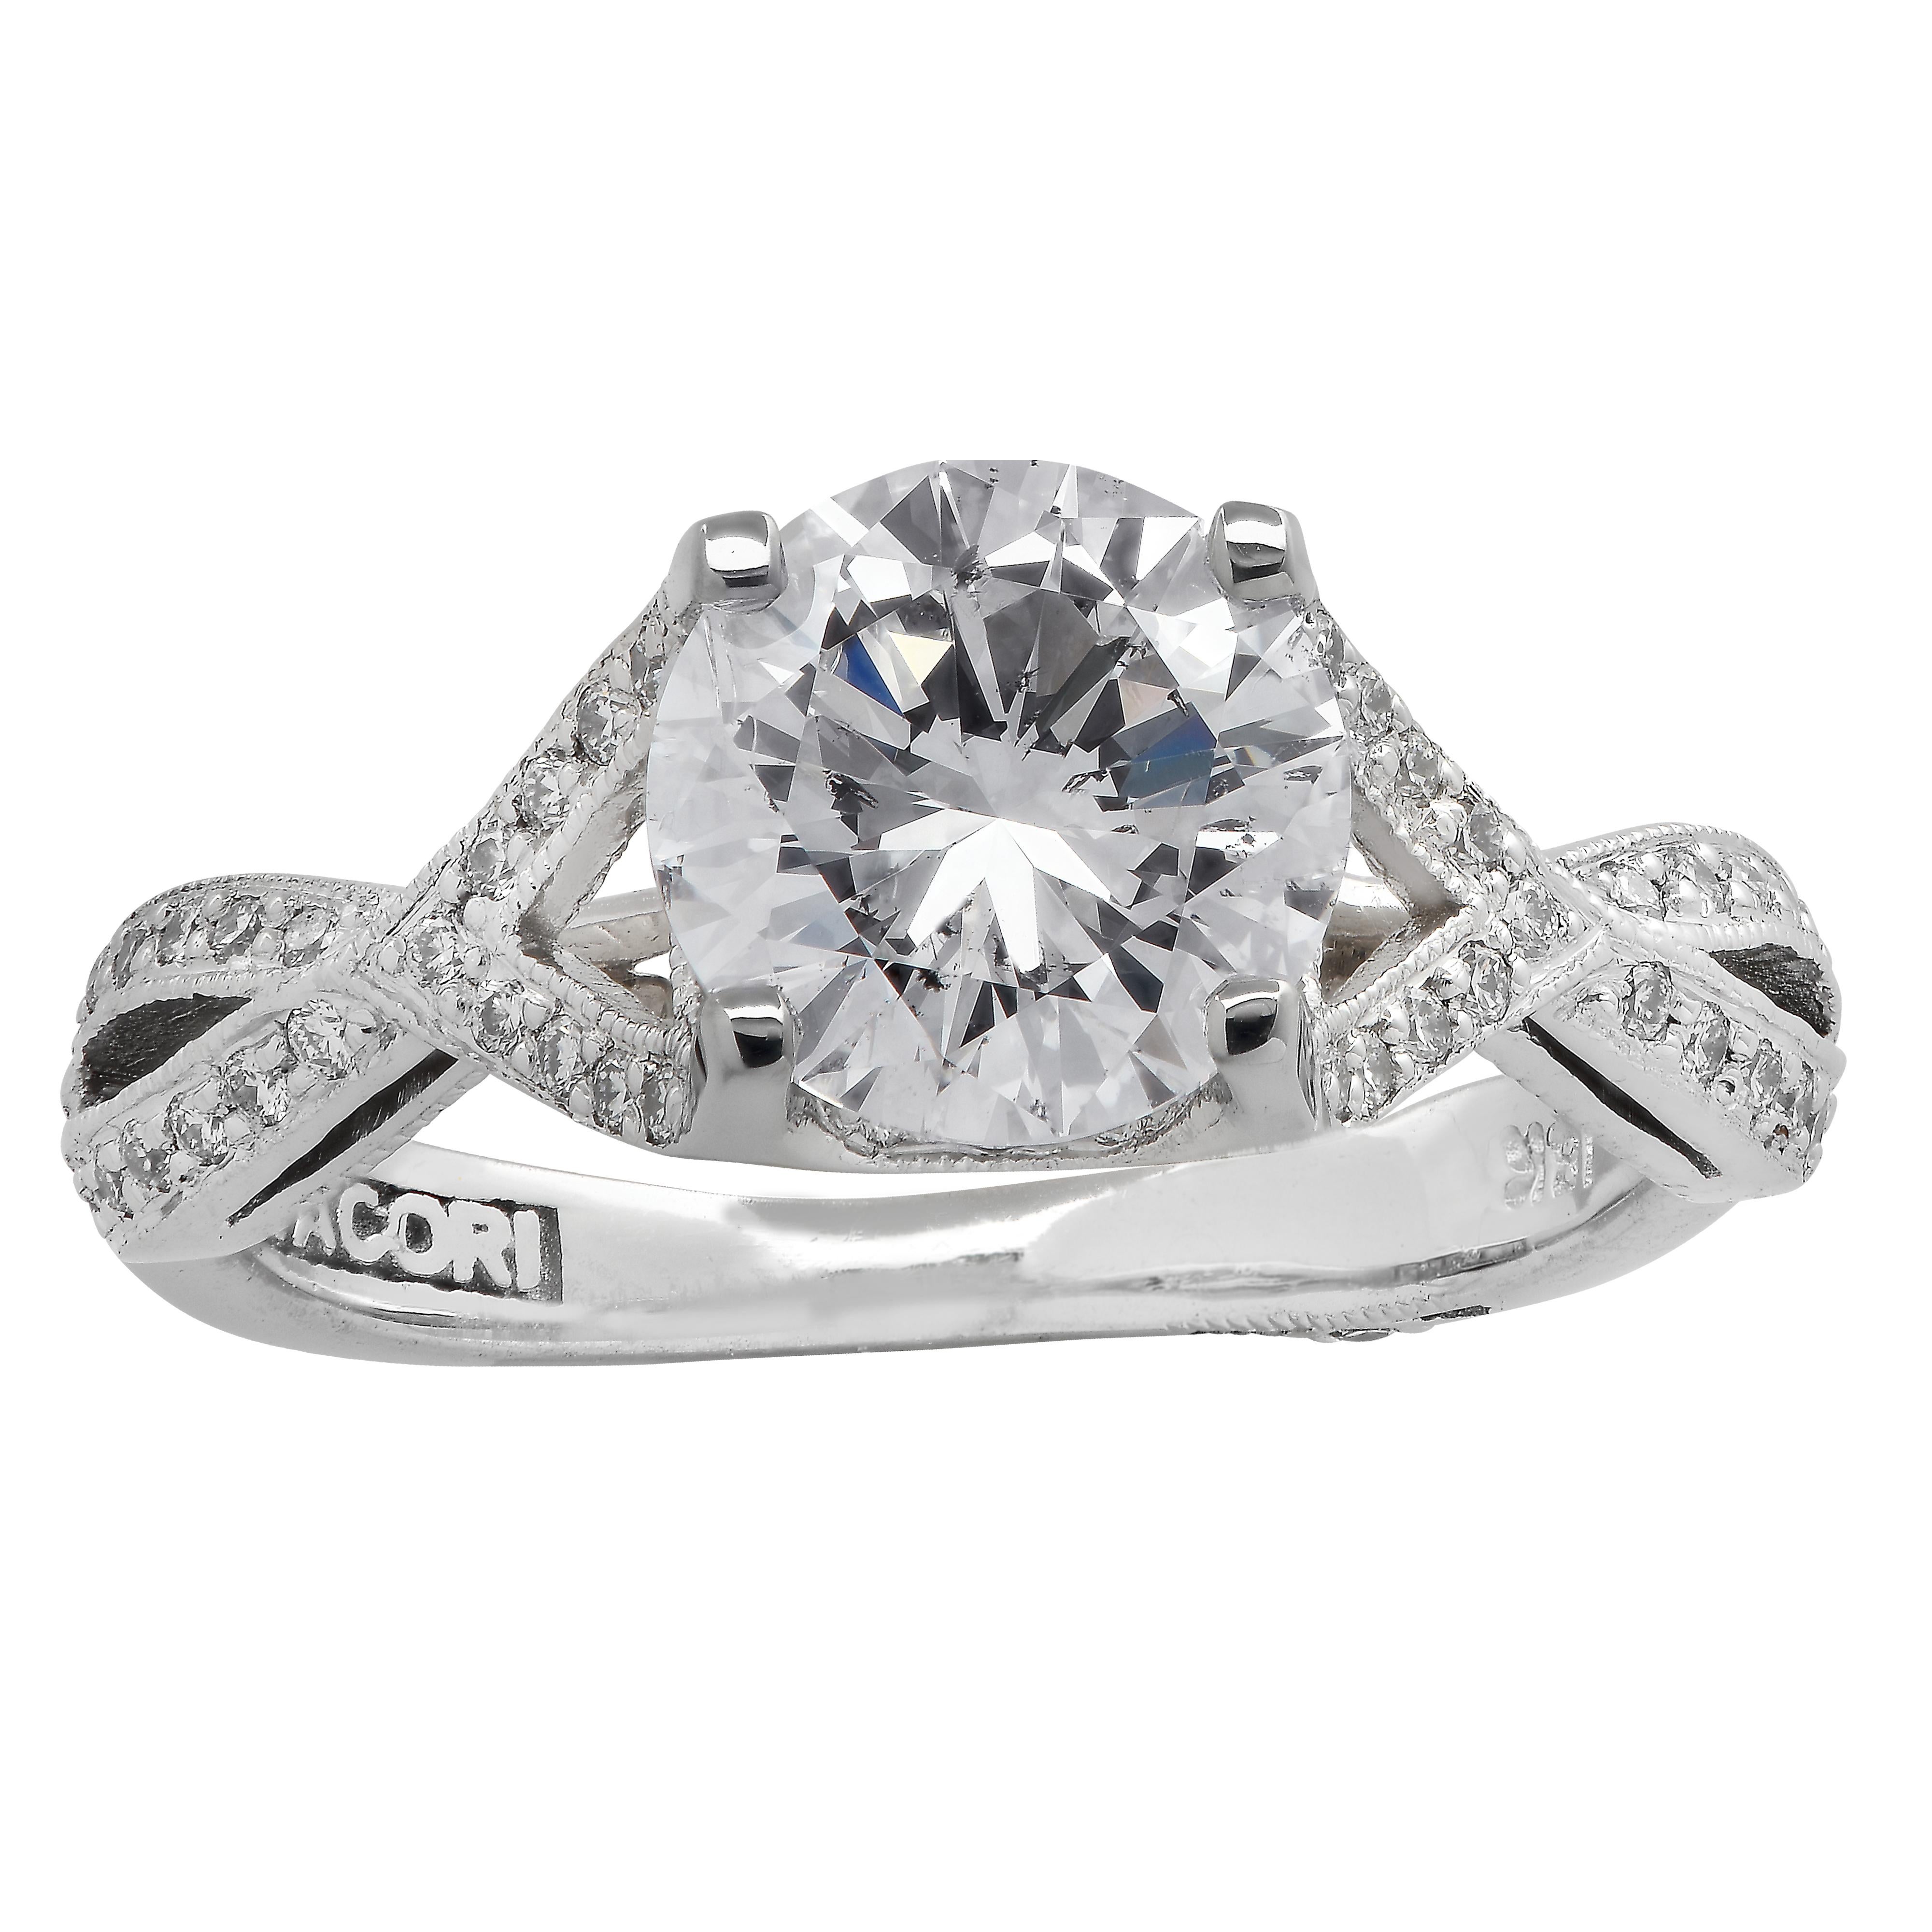 Round Cut Tacori GIA Certified 1.32 Carat Diamond Engagement Ring